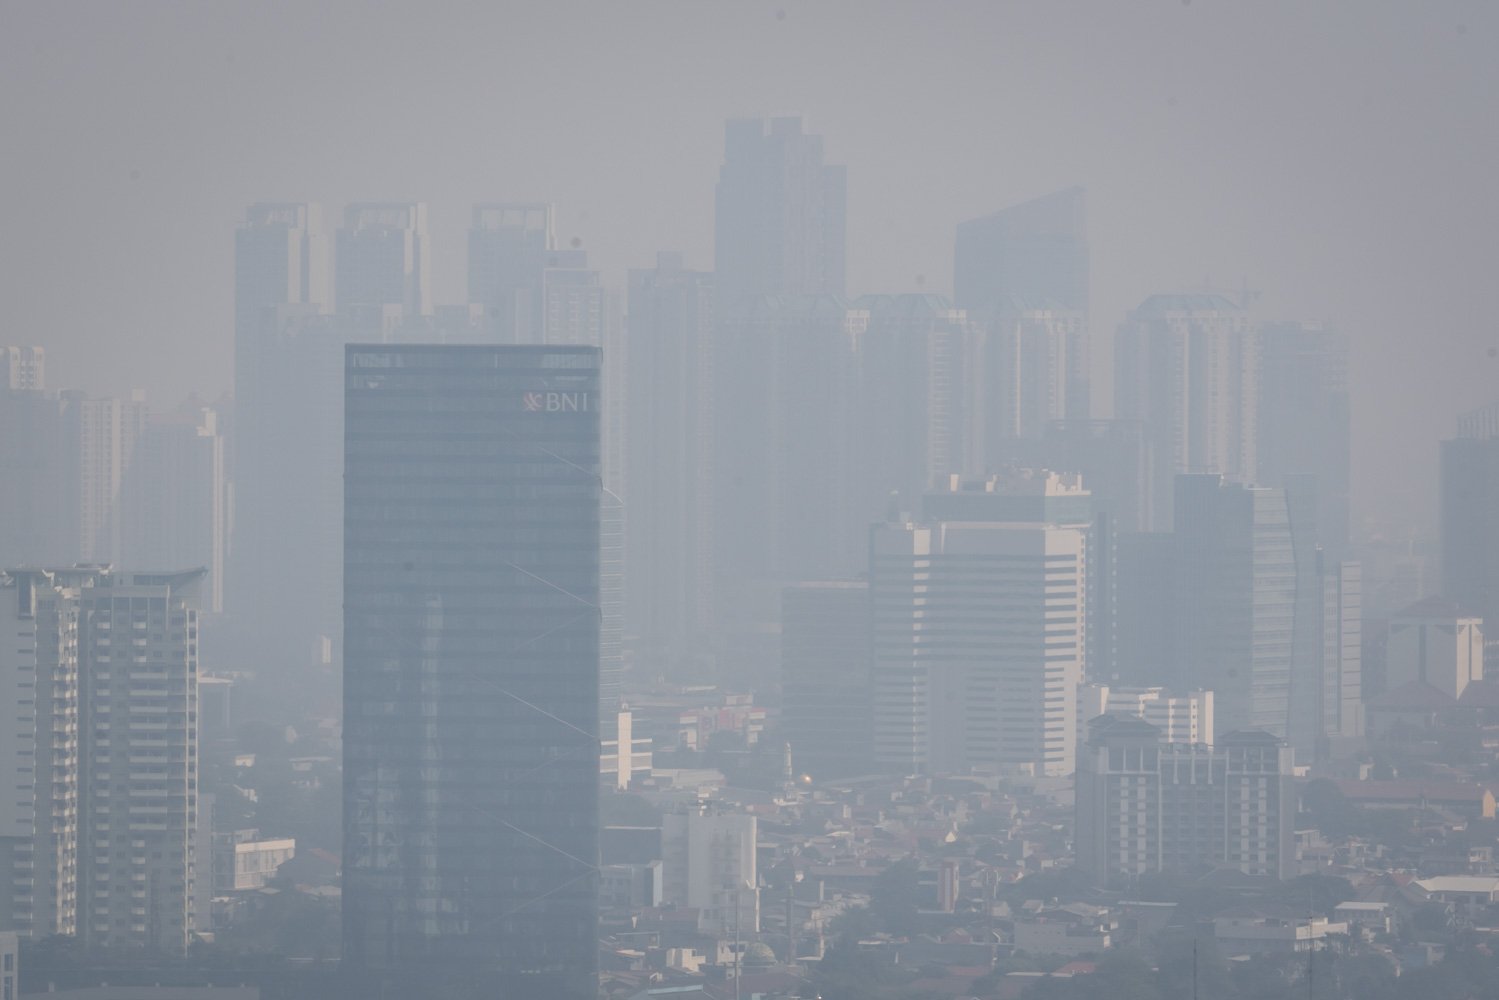 Lanskap suasana gedung diselimuti kabut polusi udara di Jakarta pada Selasa (22/8) masih buruk. Terbukti melalui pengukuran yang diterakan melalui situs pemantau kualitas udara Iqair, indeks AQI US masih pada 172 dan bertanda merah. Sementara polutan utama pada PM2.5 sebagaimana dikases pada pukul 08.19 WIB.